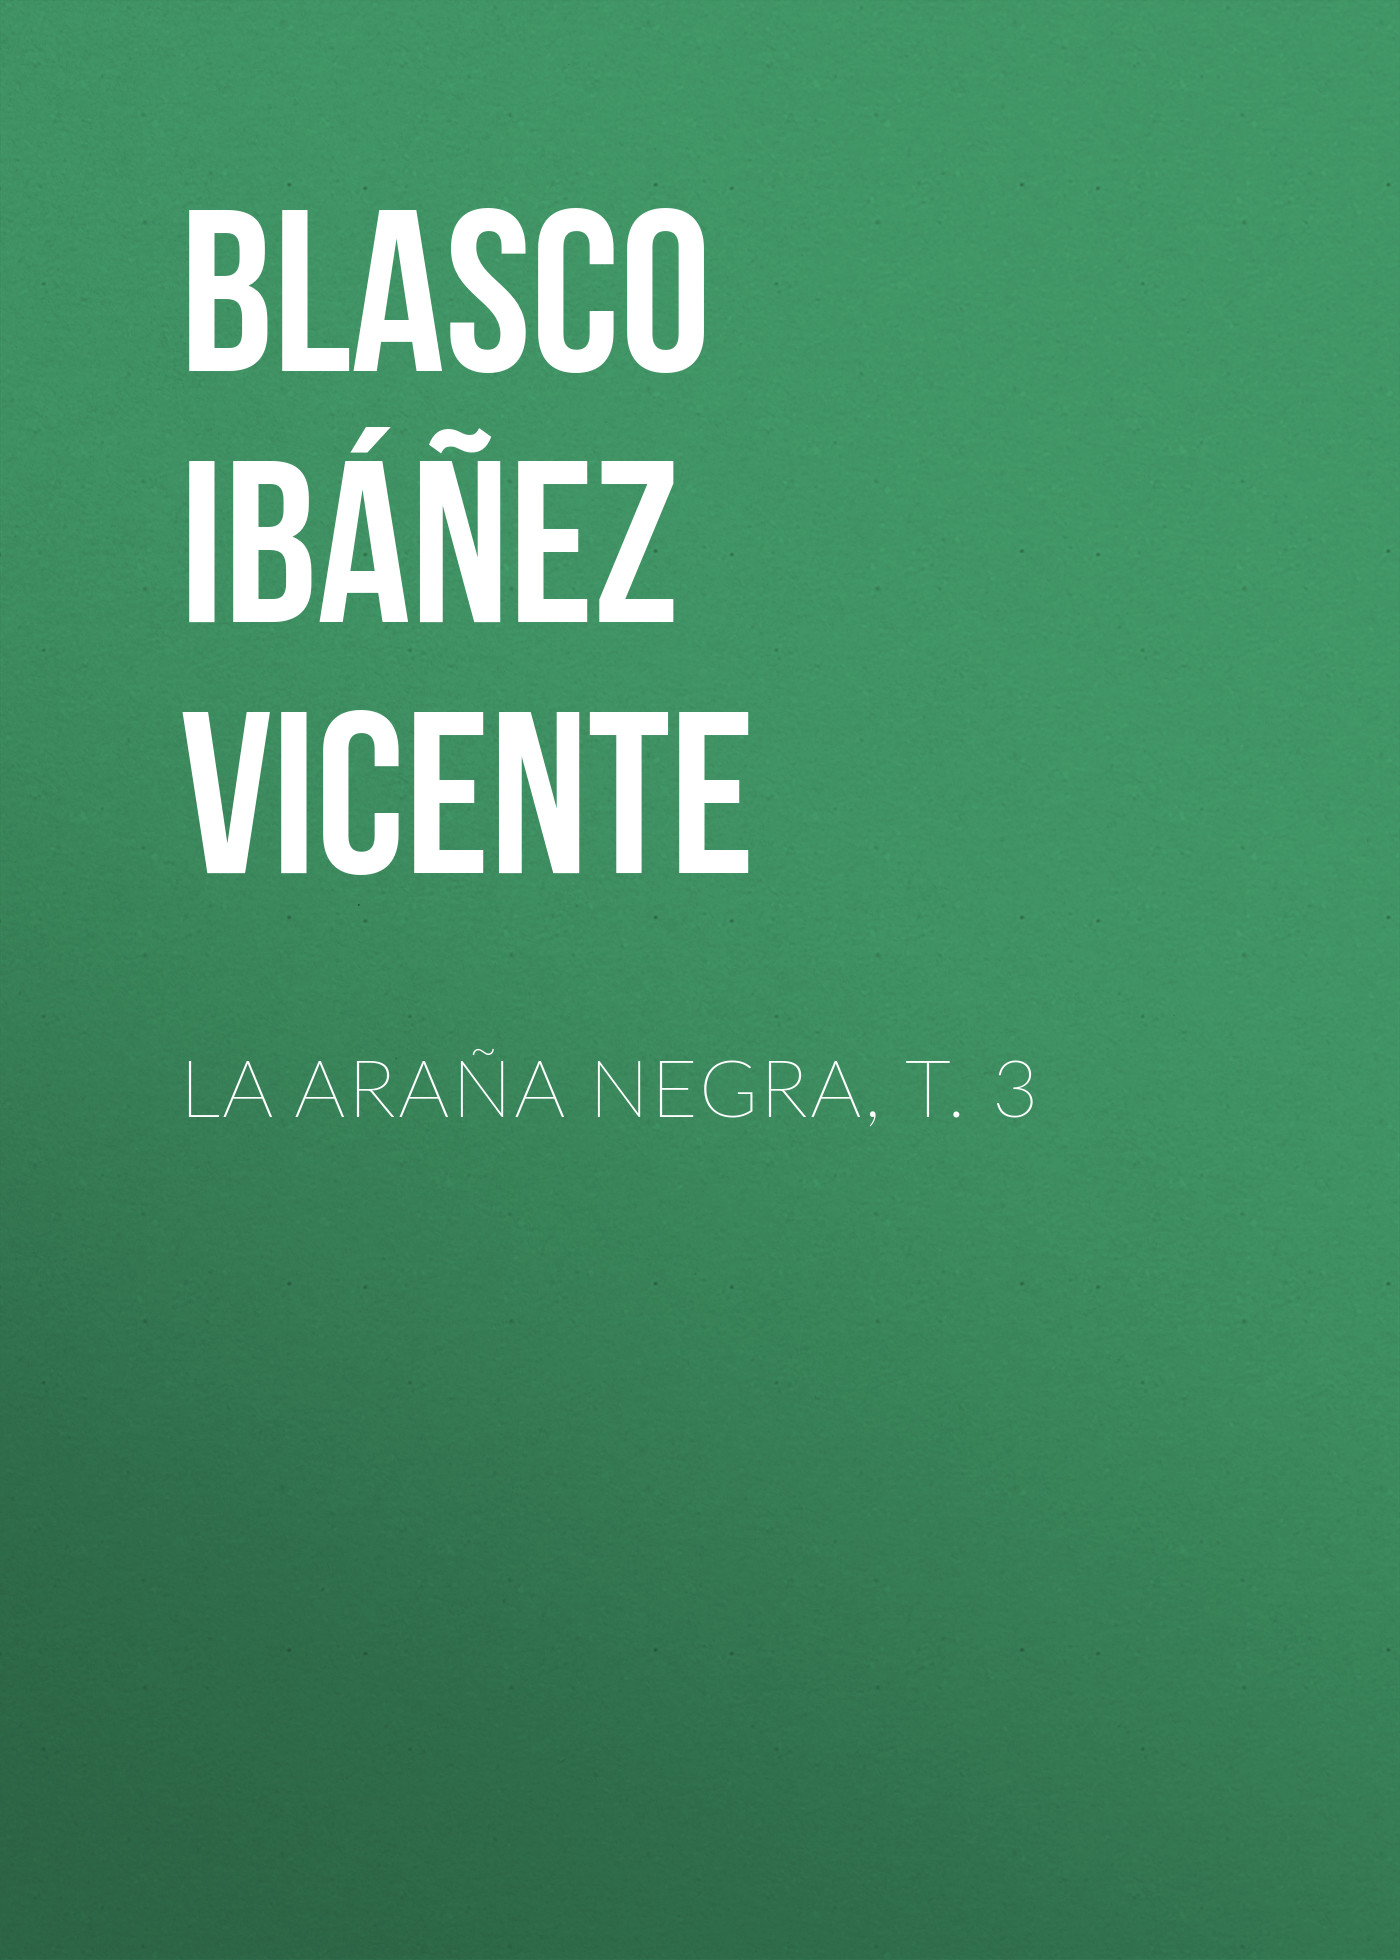 Книга La araña negra, t. 3 из серии , созданная Vicente Blasco Ibáñez, может относится к жанру Зарубежная старинная литература, Зарубежная классика, Иностранные языки. Стоимость электронной книги La araña negra, t. 3 с идентификатором 24178820 составляет 0.90 руб.